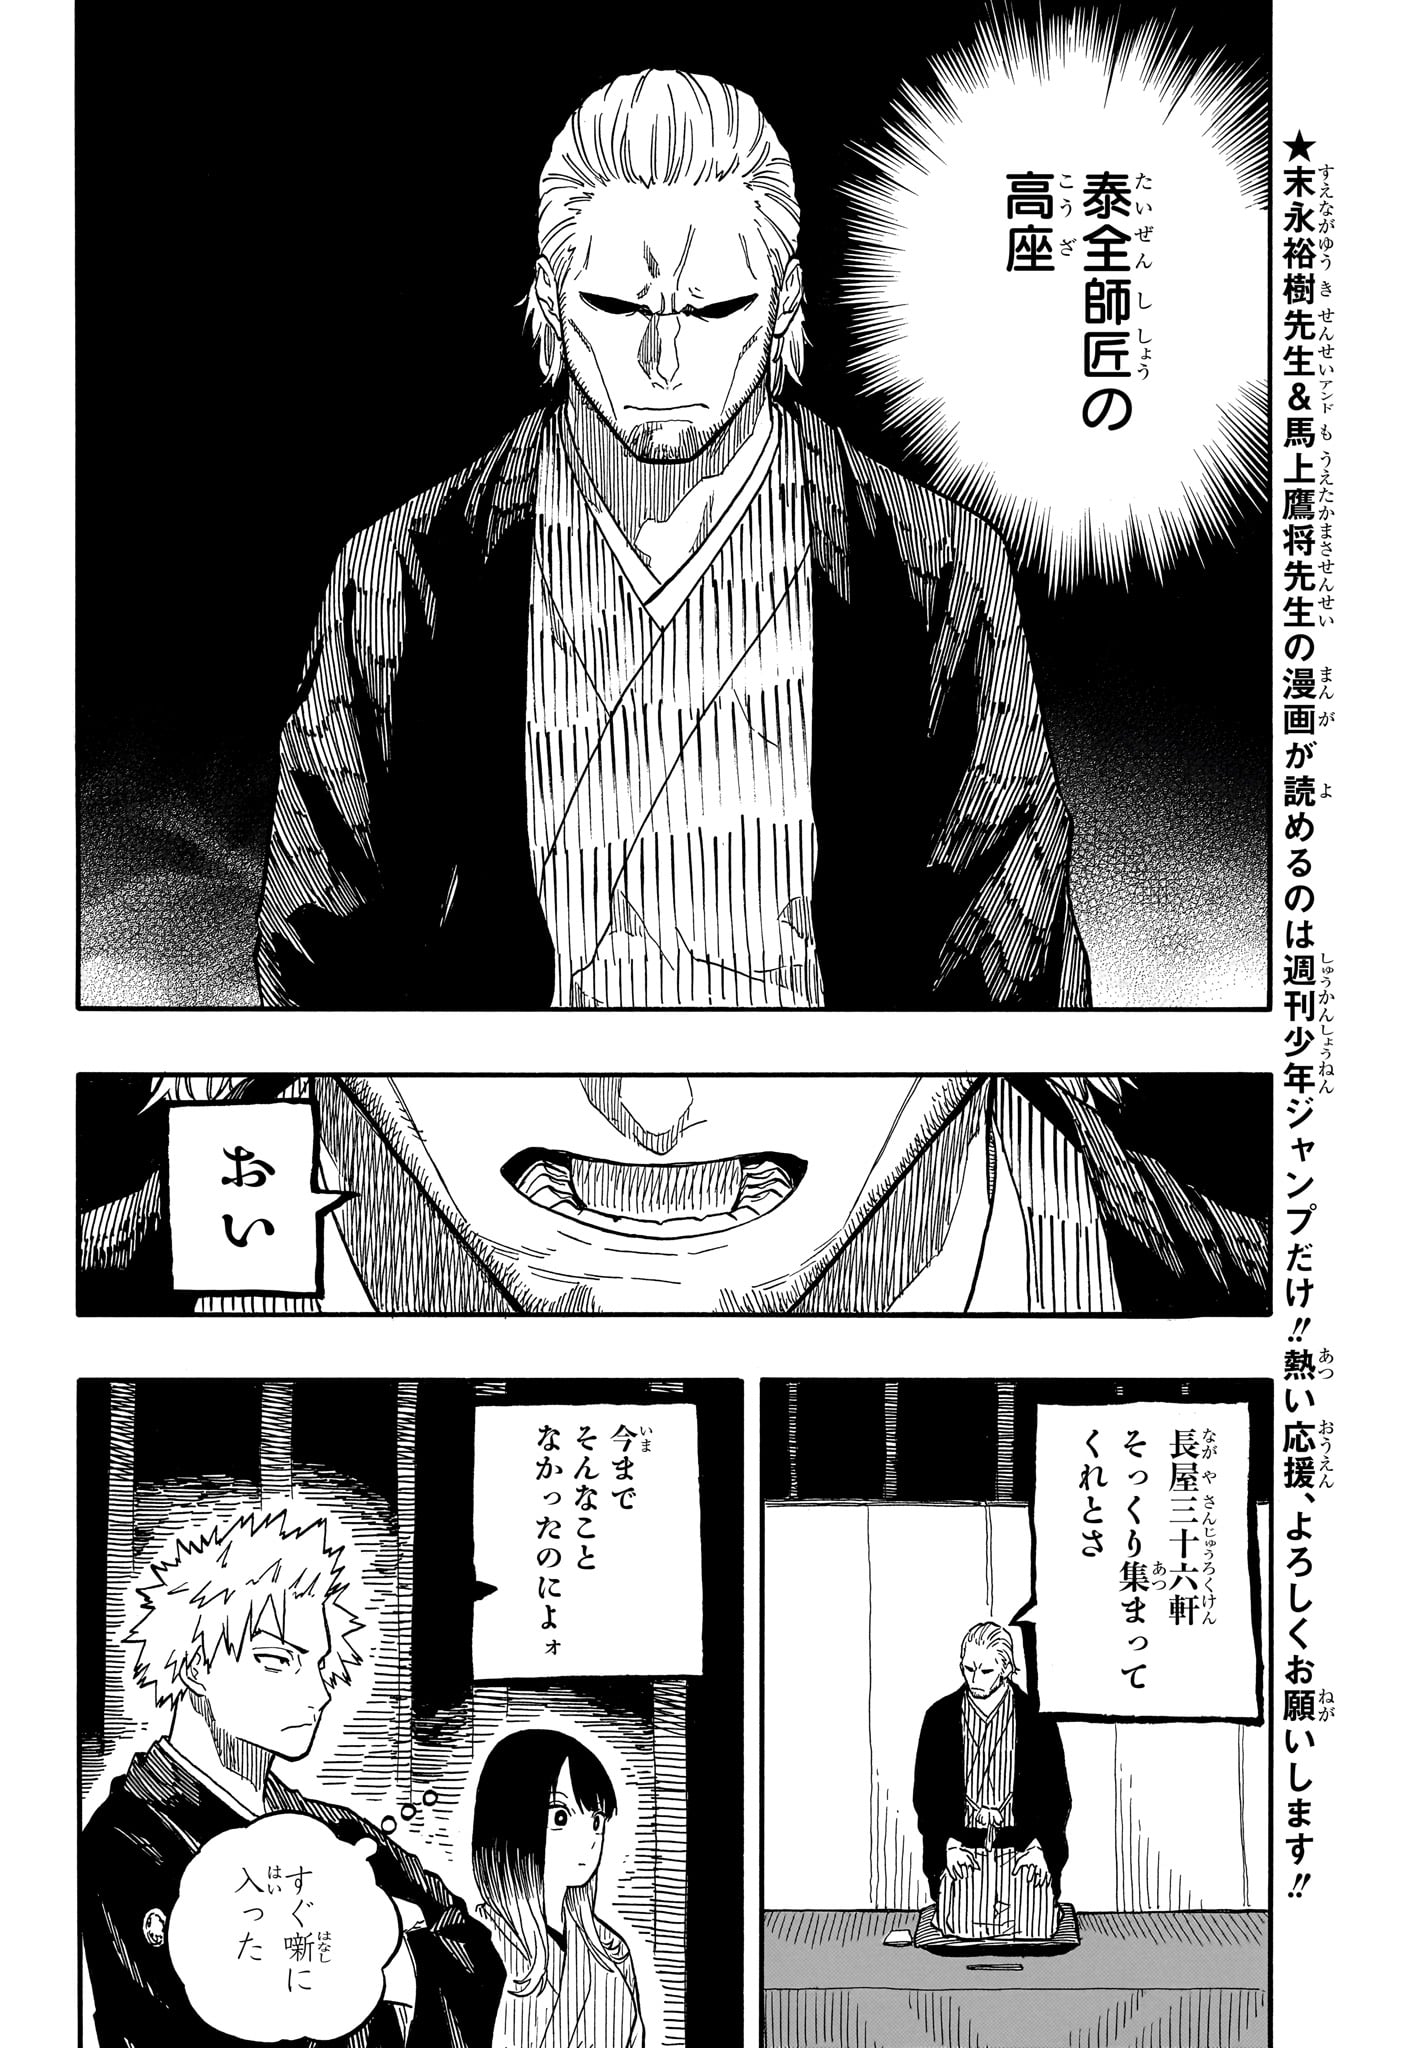 Akane-Banashi - Chapter 103 - Page 2